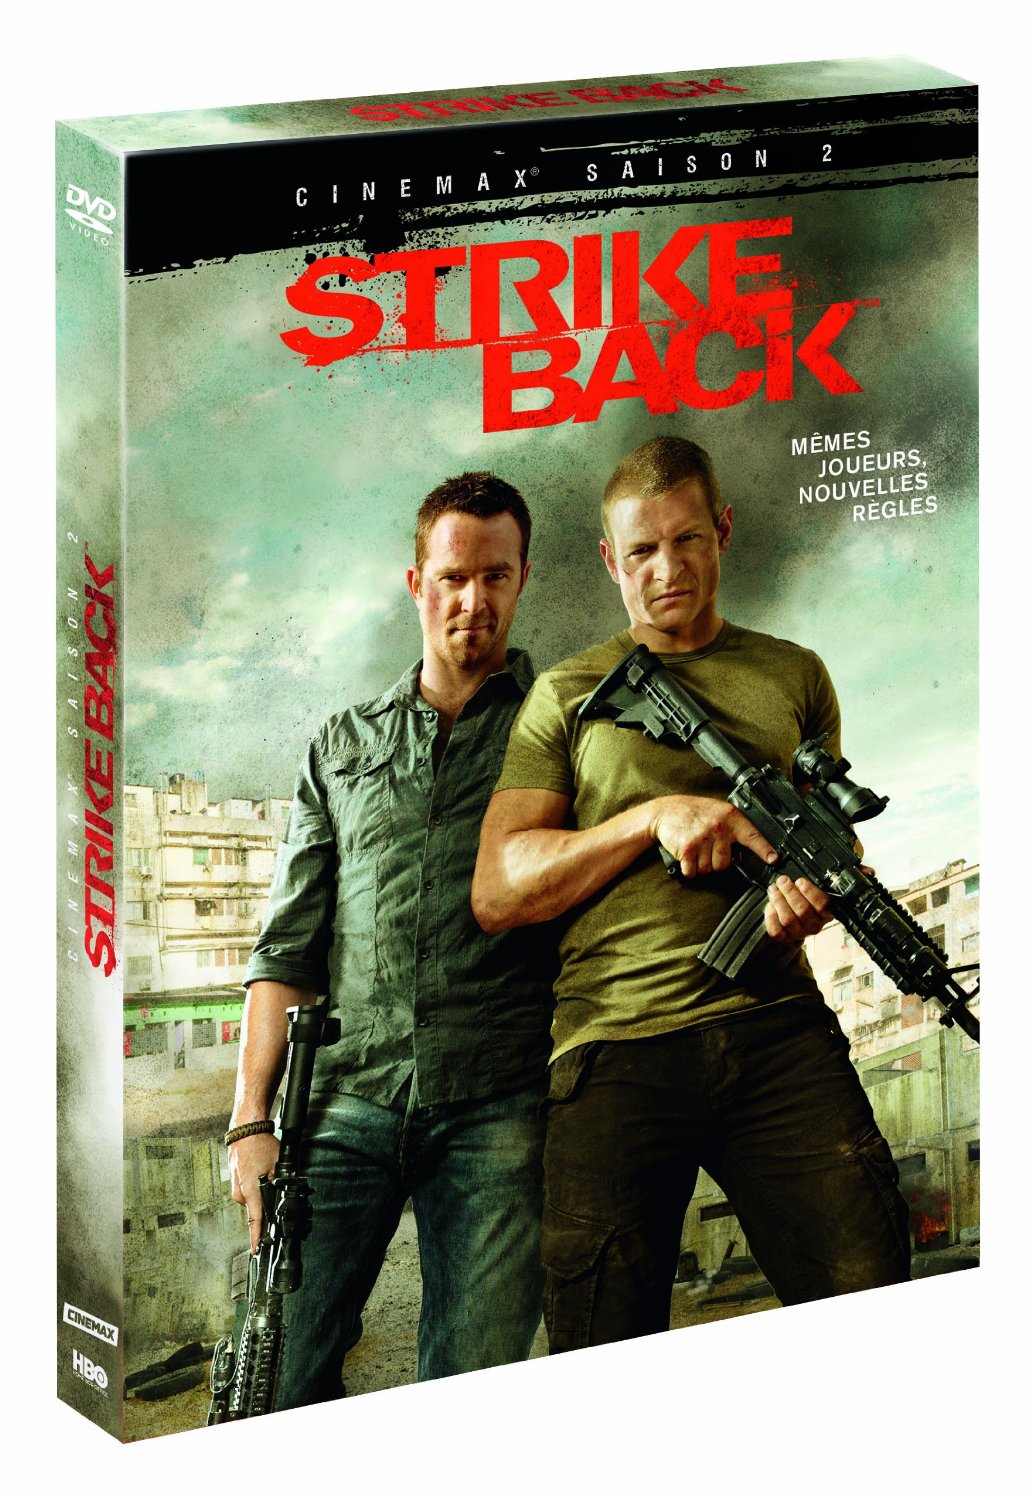 5051889421047 Strike Back Cinemax Saison 2 (3) (Scott stonebridge) FR DVD